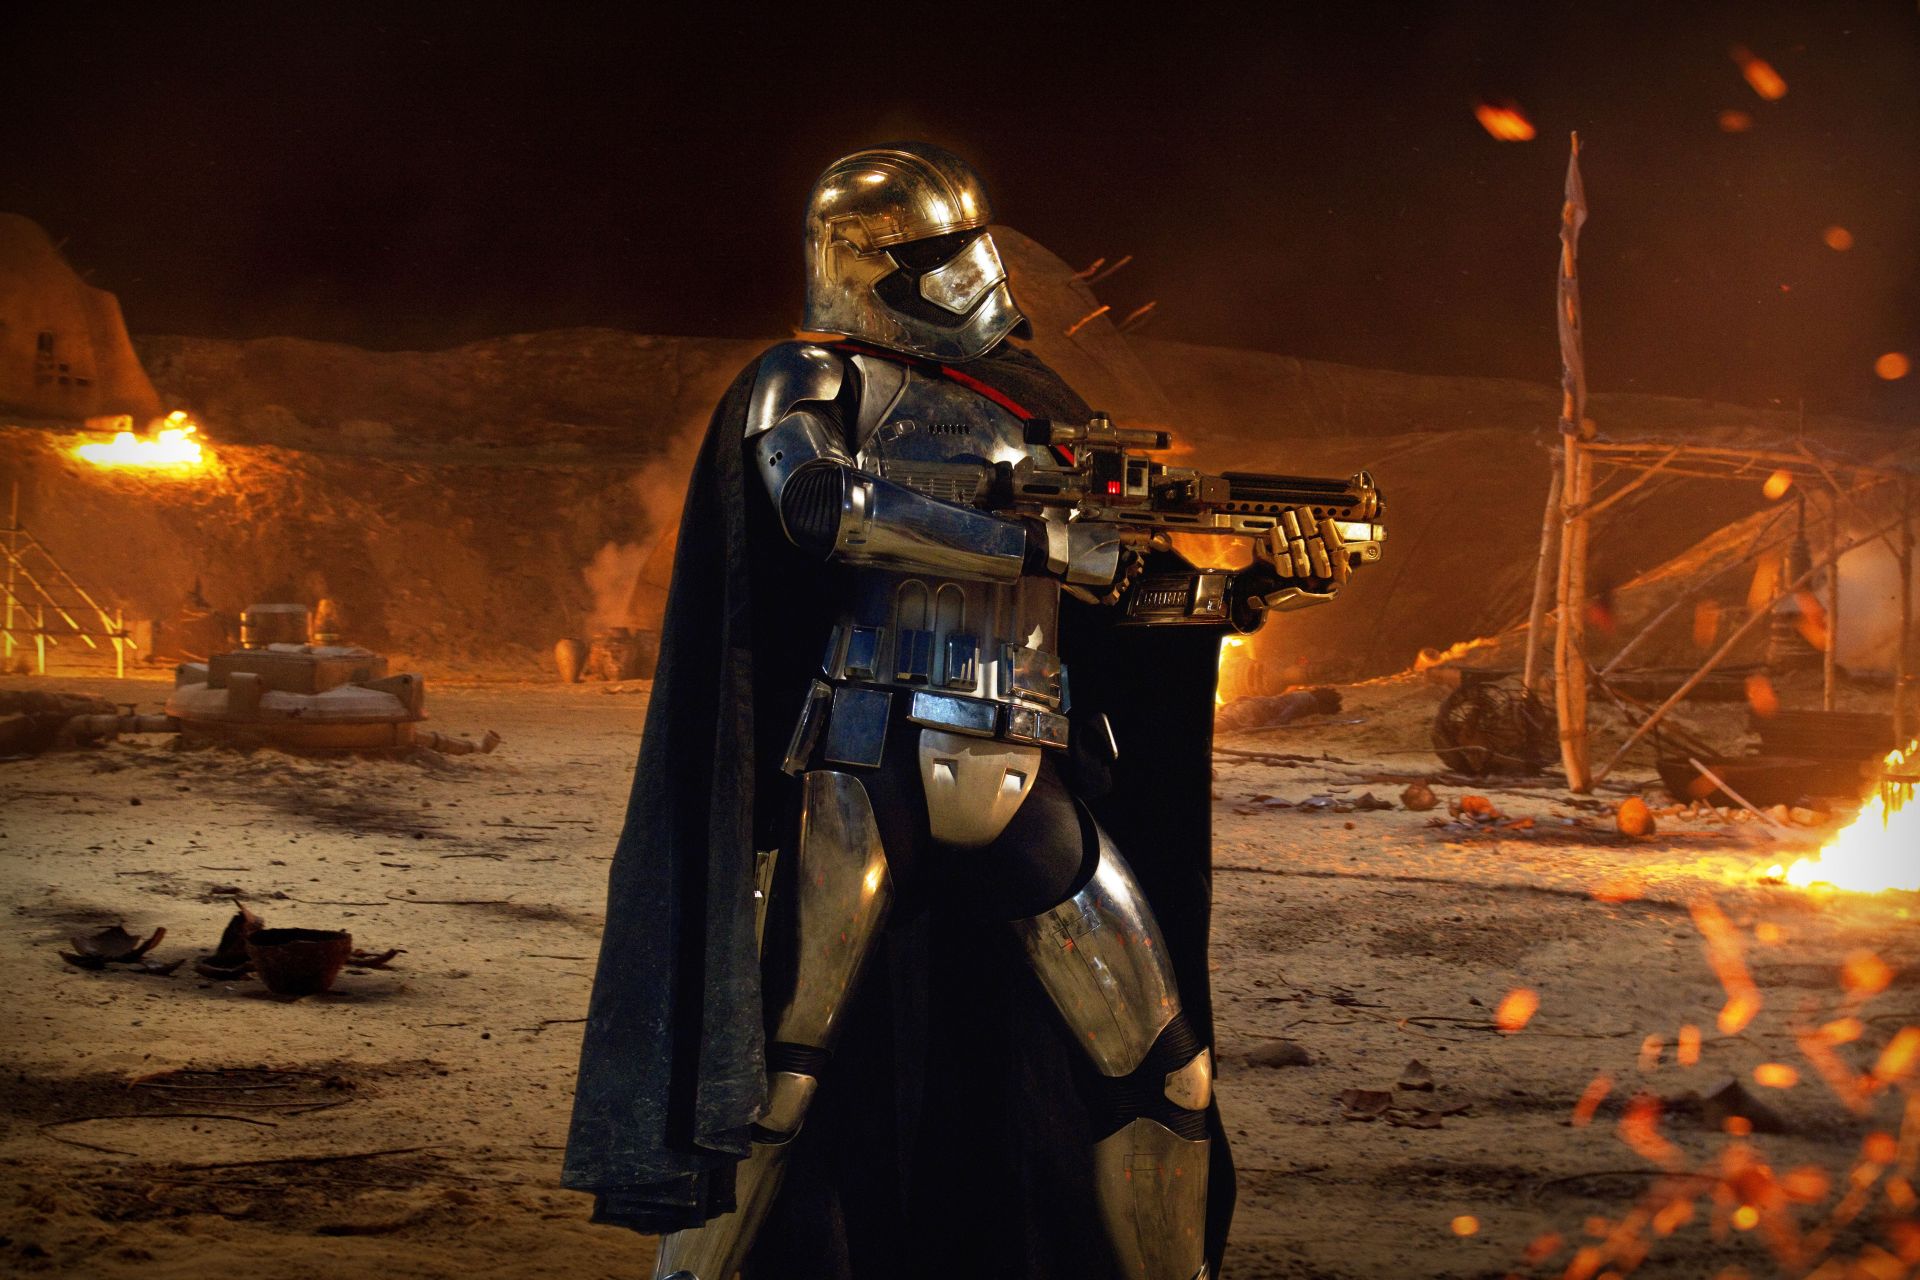 First Order Star Wars Force Awakens Villain - HD Wallpaper 